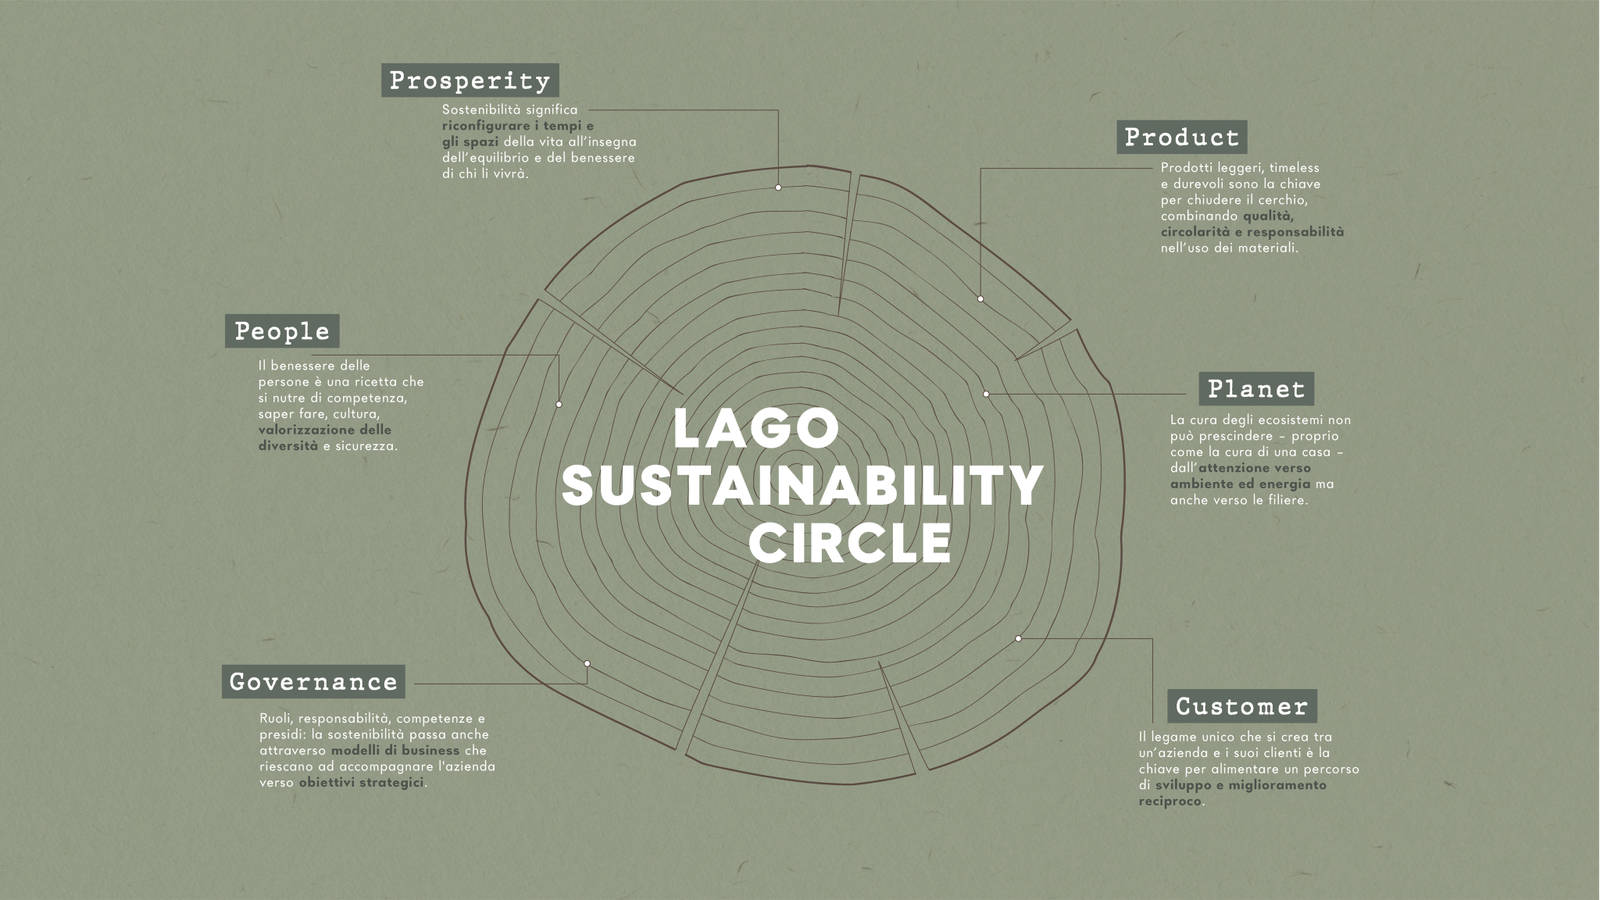 Lago_sustainability_circle_Landing_1920x1080